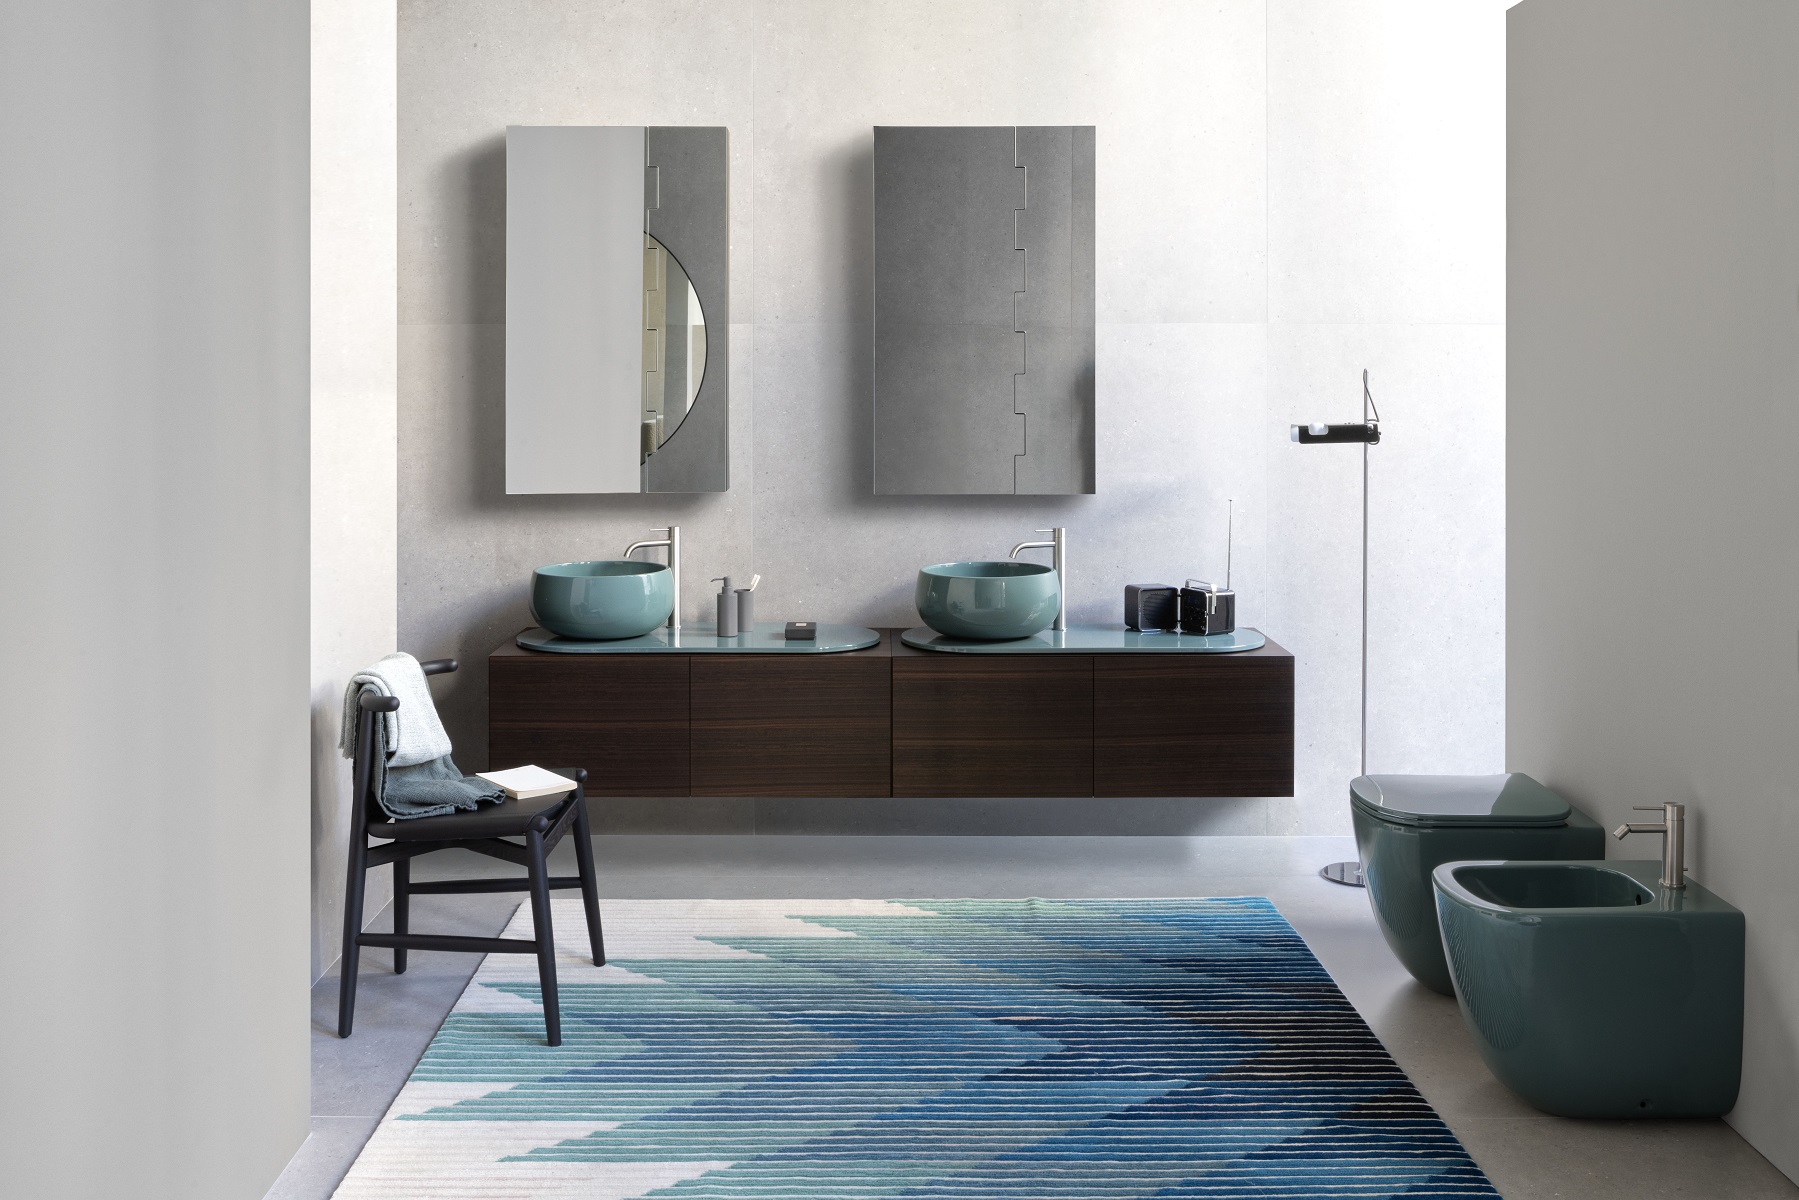 Veľká kúpeľňa 
s párom umývadiel 
v smaragdovej 
farbe v kombinácii 
s tmavým drevom.